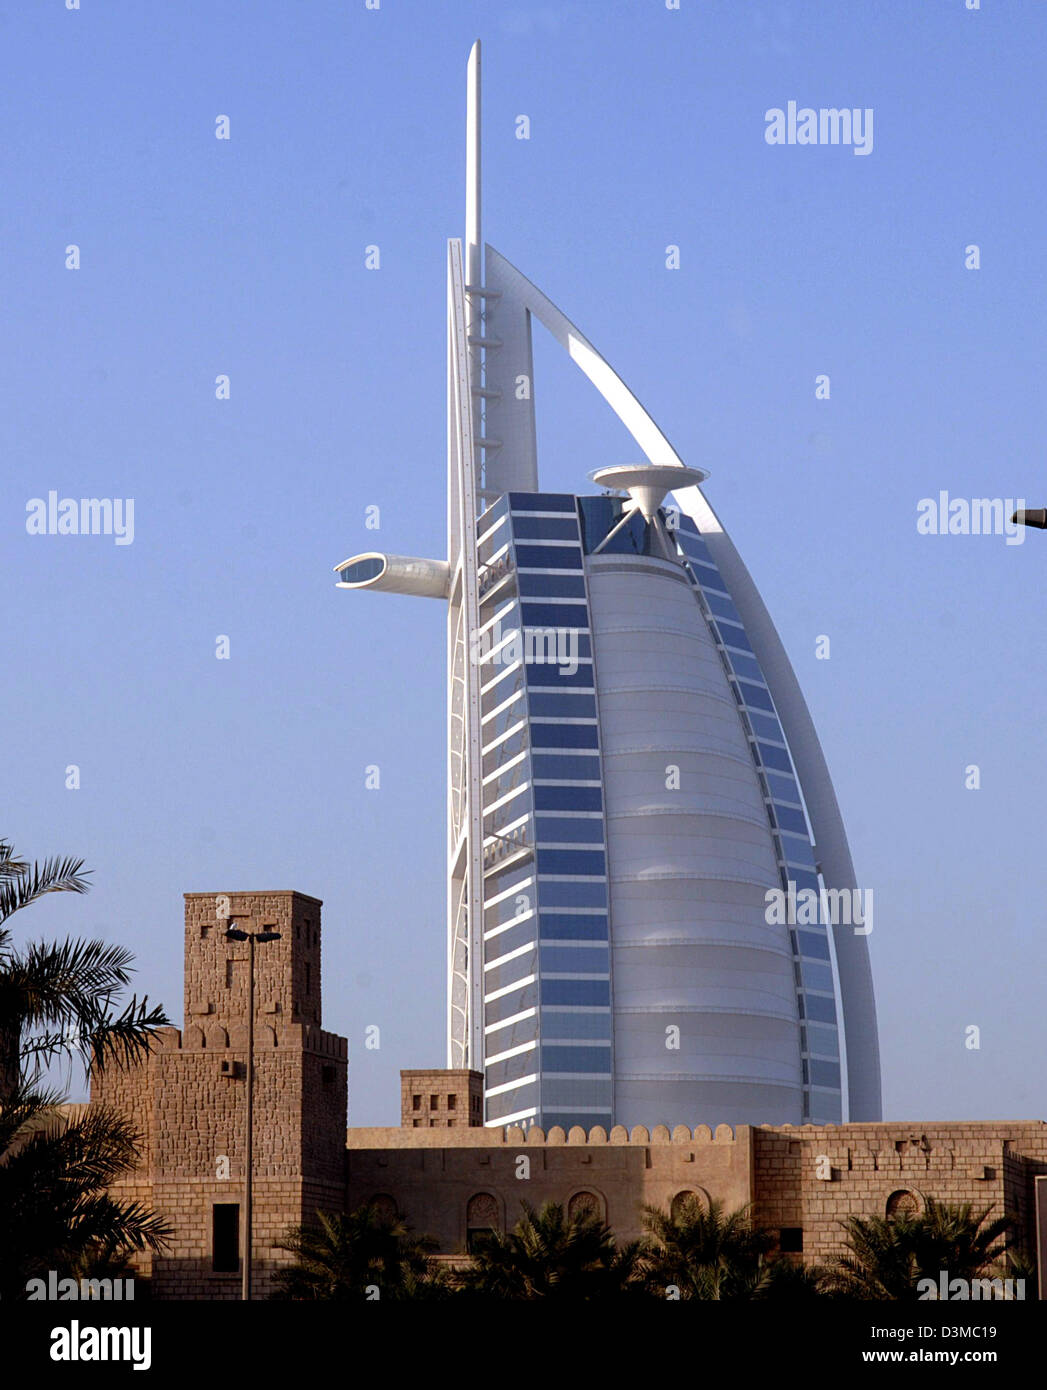 Das Bild zeigt die für Weg sichtbar basierend auf einem Segel-Luxus-Hotel Burj al Arab, auch genannt The Arabian Tower in Dubai City, Vereinigte Arabische Emirate, 12. Januar 2006. Im Vordergrund ist ein traditionell gebauten Gebäude. Das Hotel liegt auf einer kleinen künstlichen Inseln inmitten des Meeres und ist die höchste Luxus-Unterkunft der Welt mit einer Höhe von 321 Metern. P Stockfoto